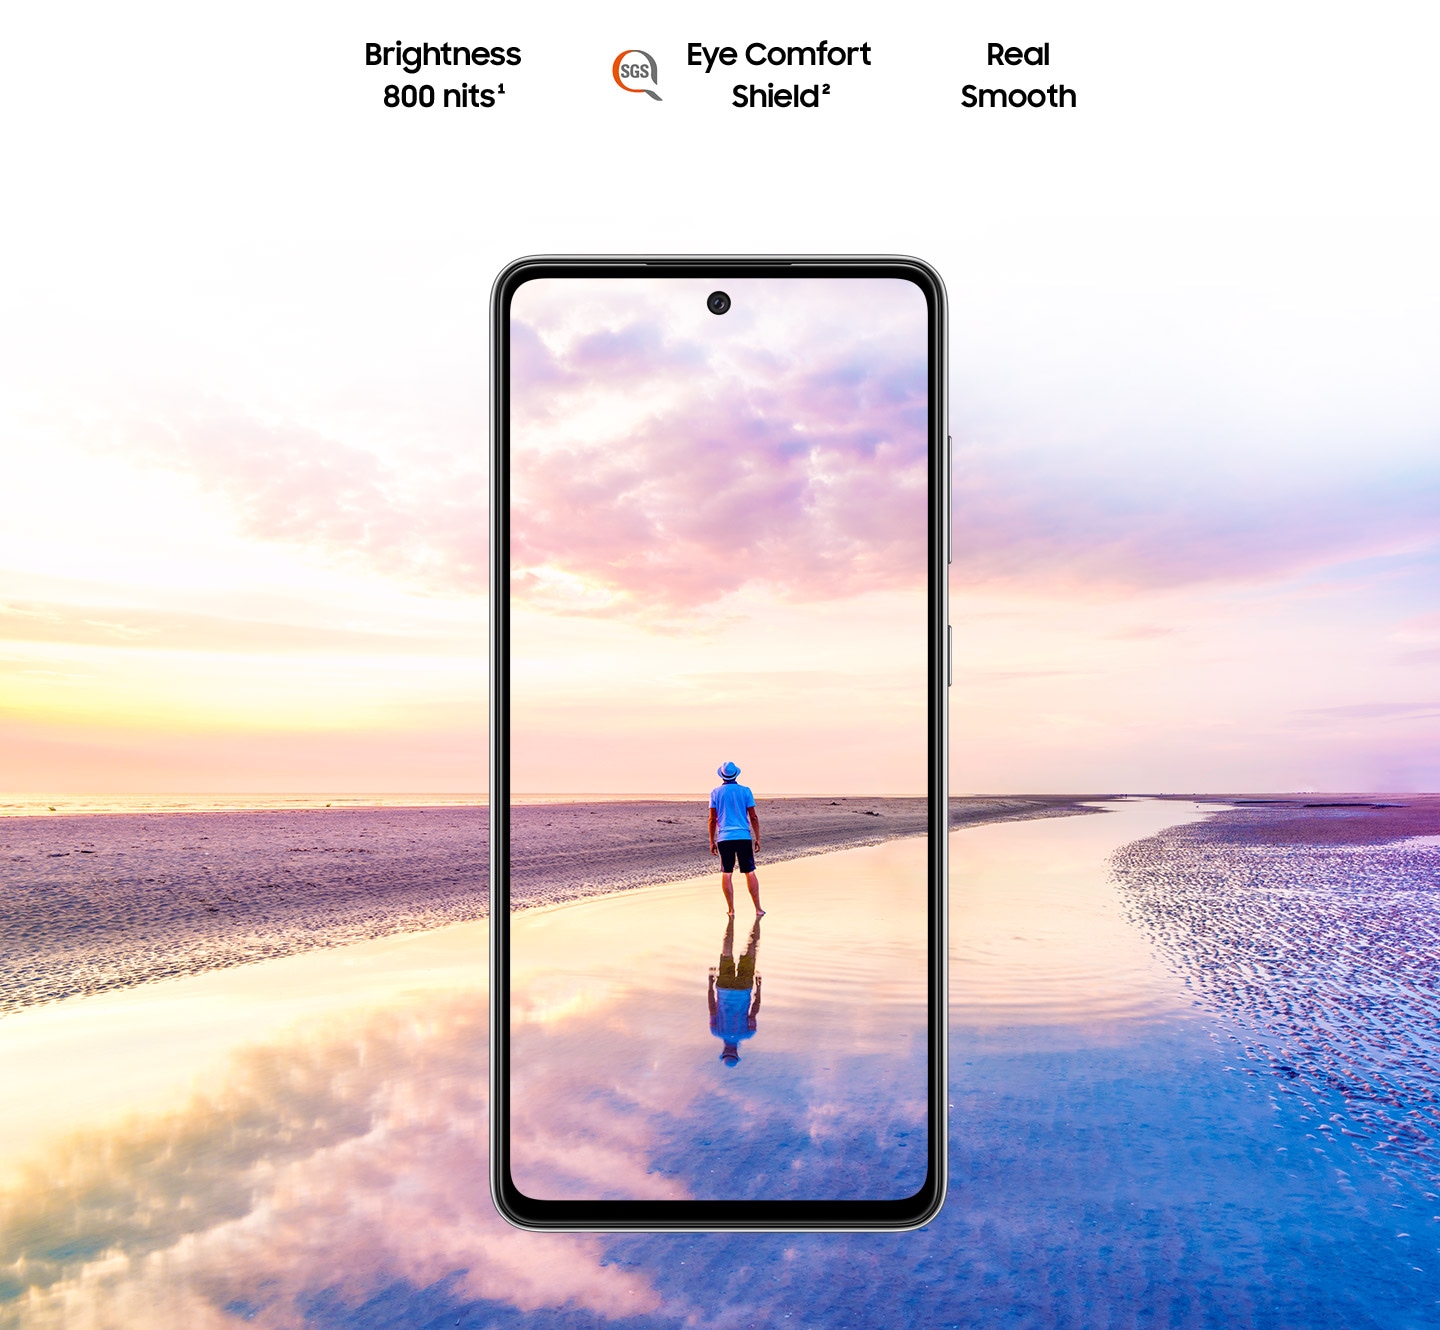 Galaxy A52 vu de face.  Une scène d'un homme debout sur une plage au coucher du soleil avec des couleurs roses et bleues dans le ciel s'étend en dehors des limites de l'affichage.  Le texte indique Brightness 800 nits, Eye Comfort Shield, avec le logo SGS et Real Smooth.